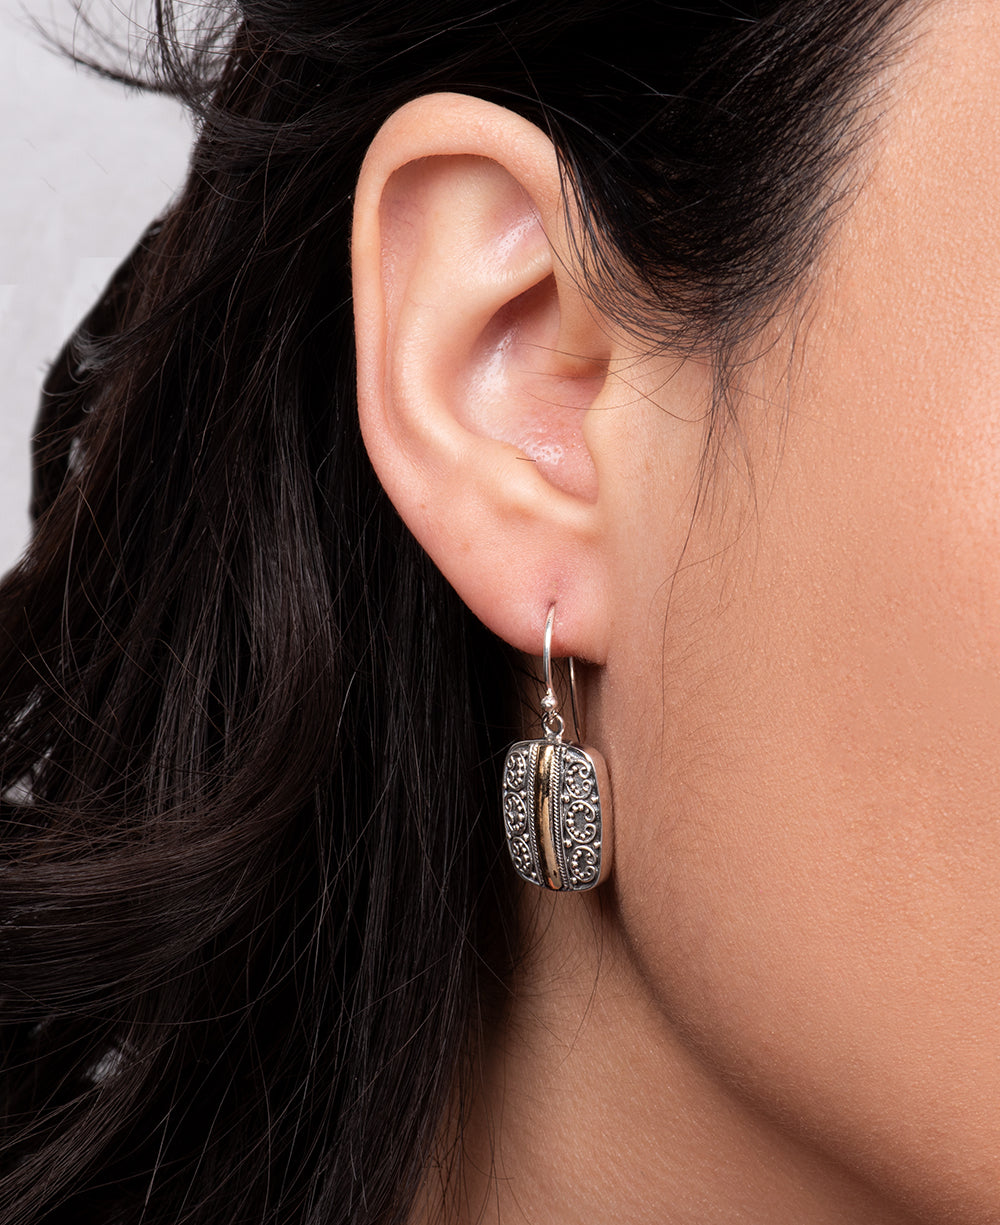 French hook sterling silver earrings